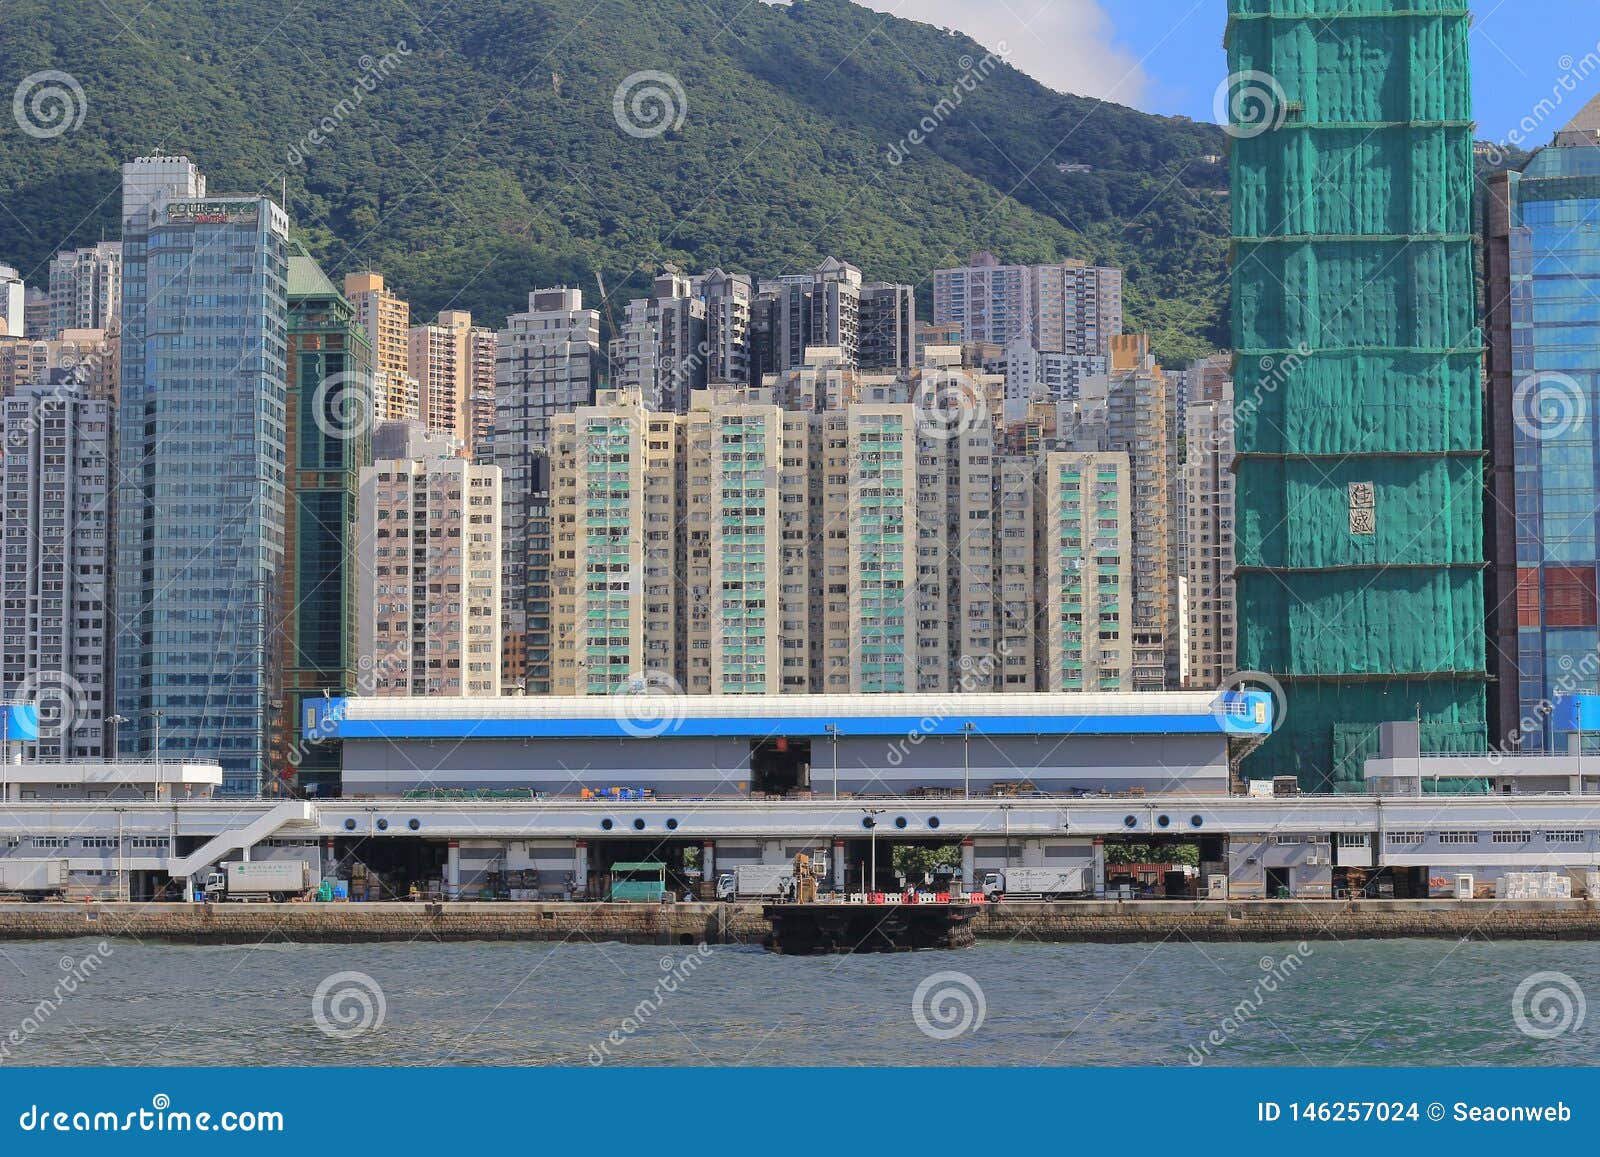 23 Aug 2014 Sheung Wan Hong Kong Editorial Stock Image Image Of